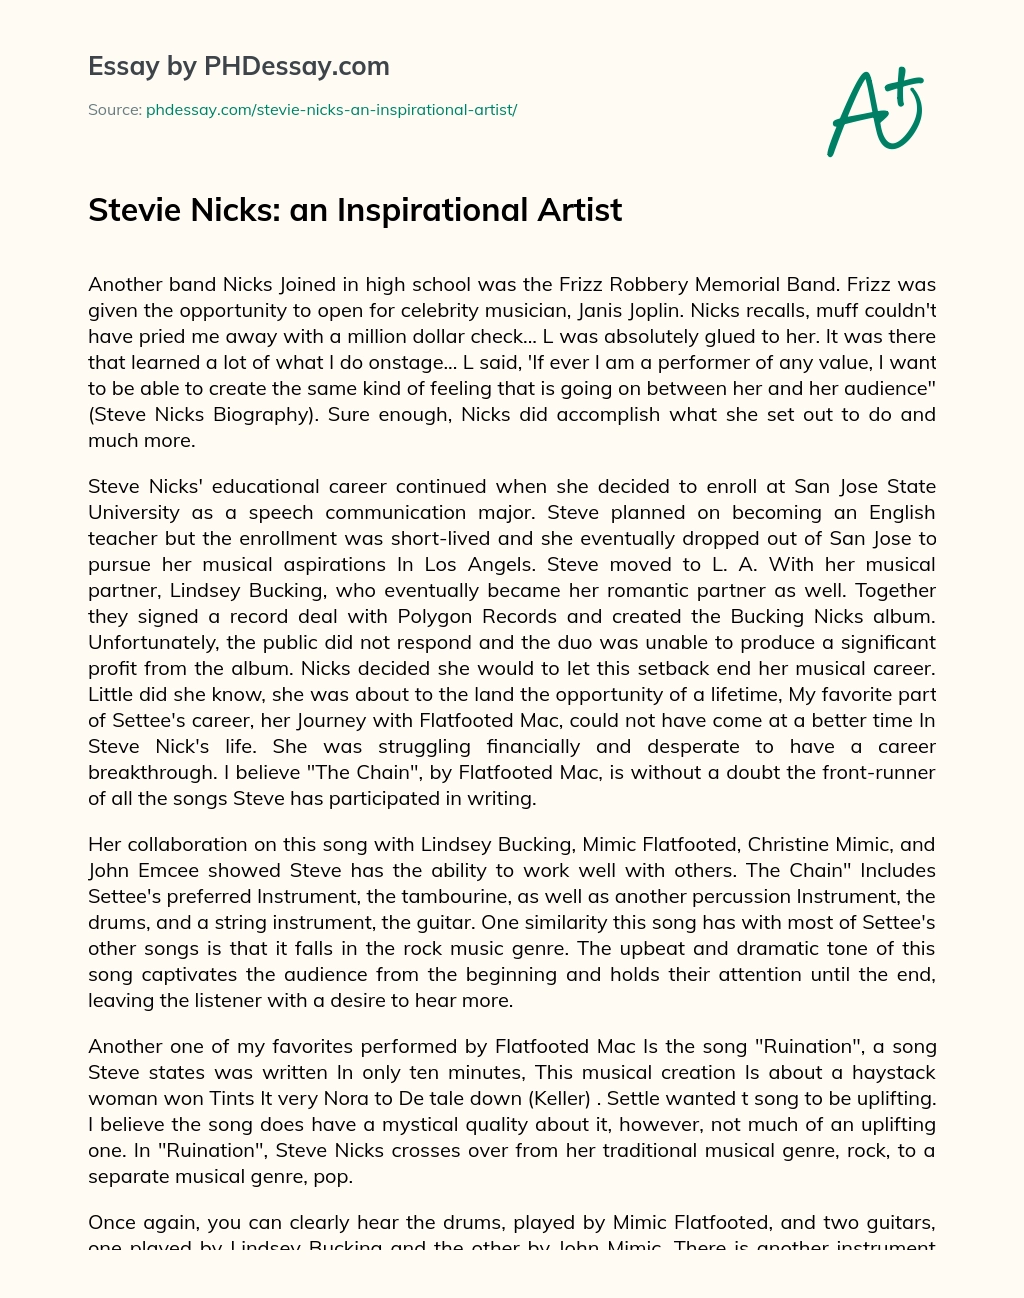 Stevie Nicks: an Inspirational Artist essay